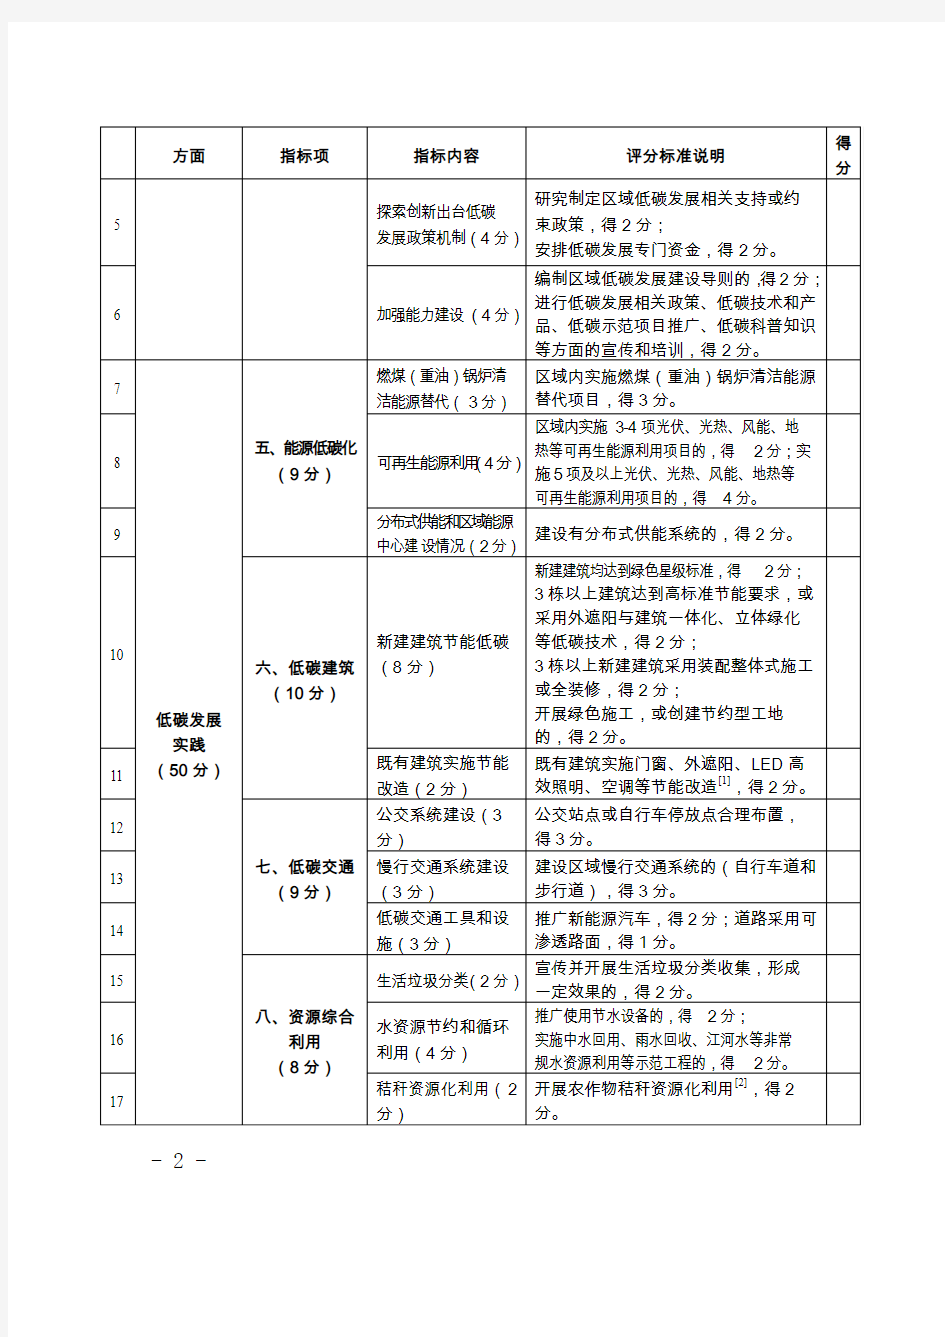 上海低碳发展实践区评价指标体系-上海发改委